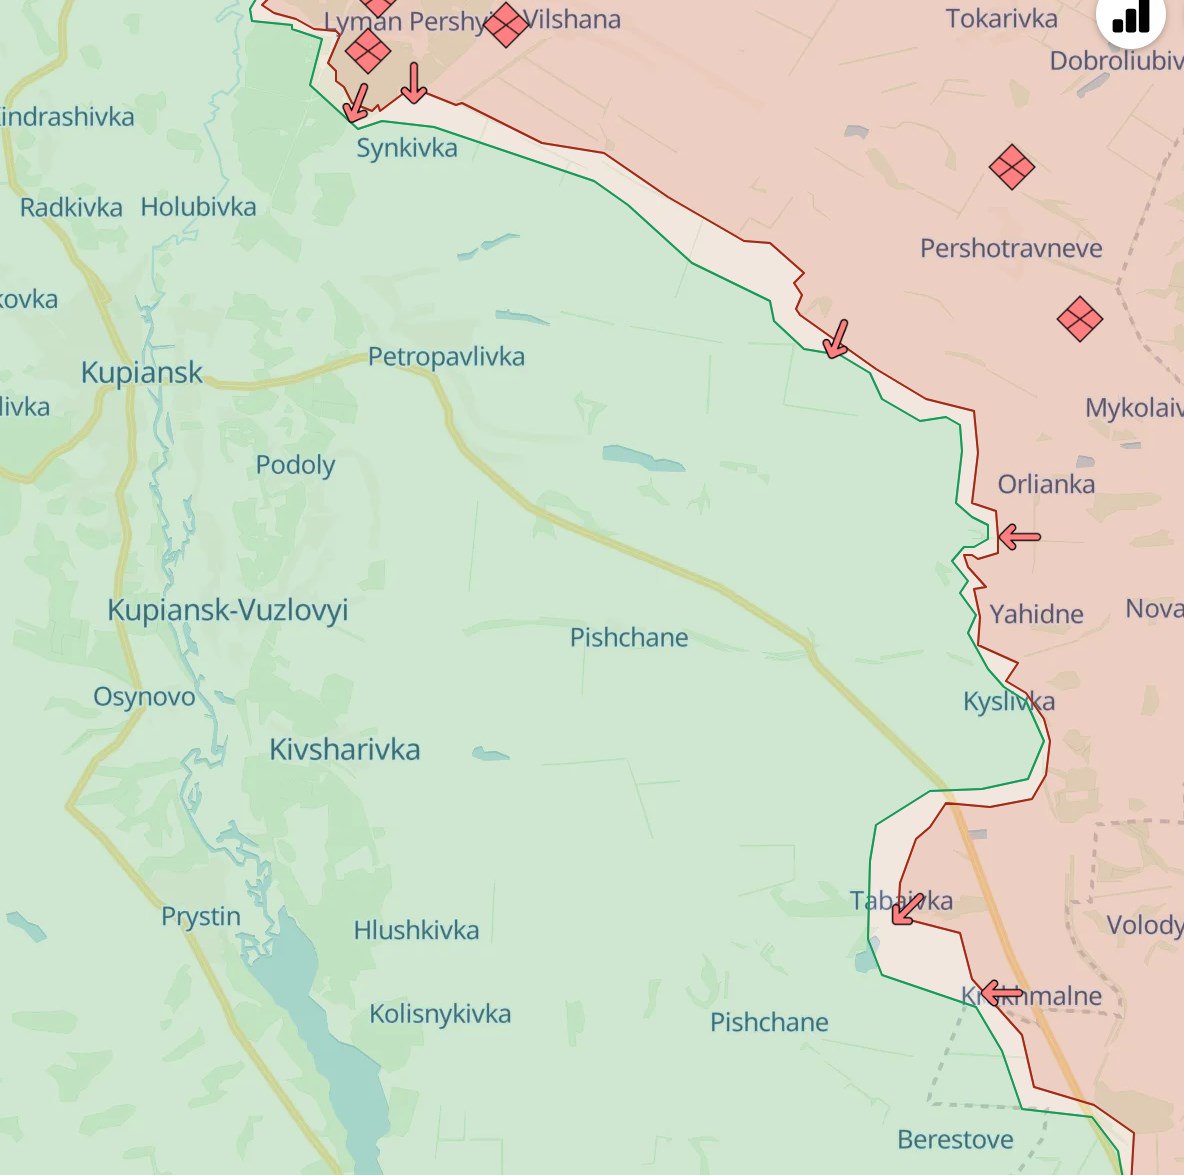 Карта боевых действий. Источнк - Телеграм